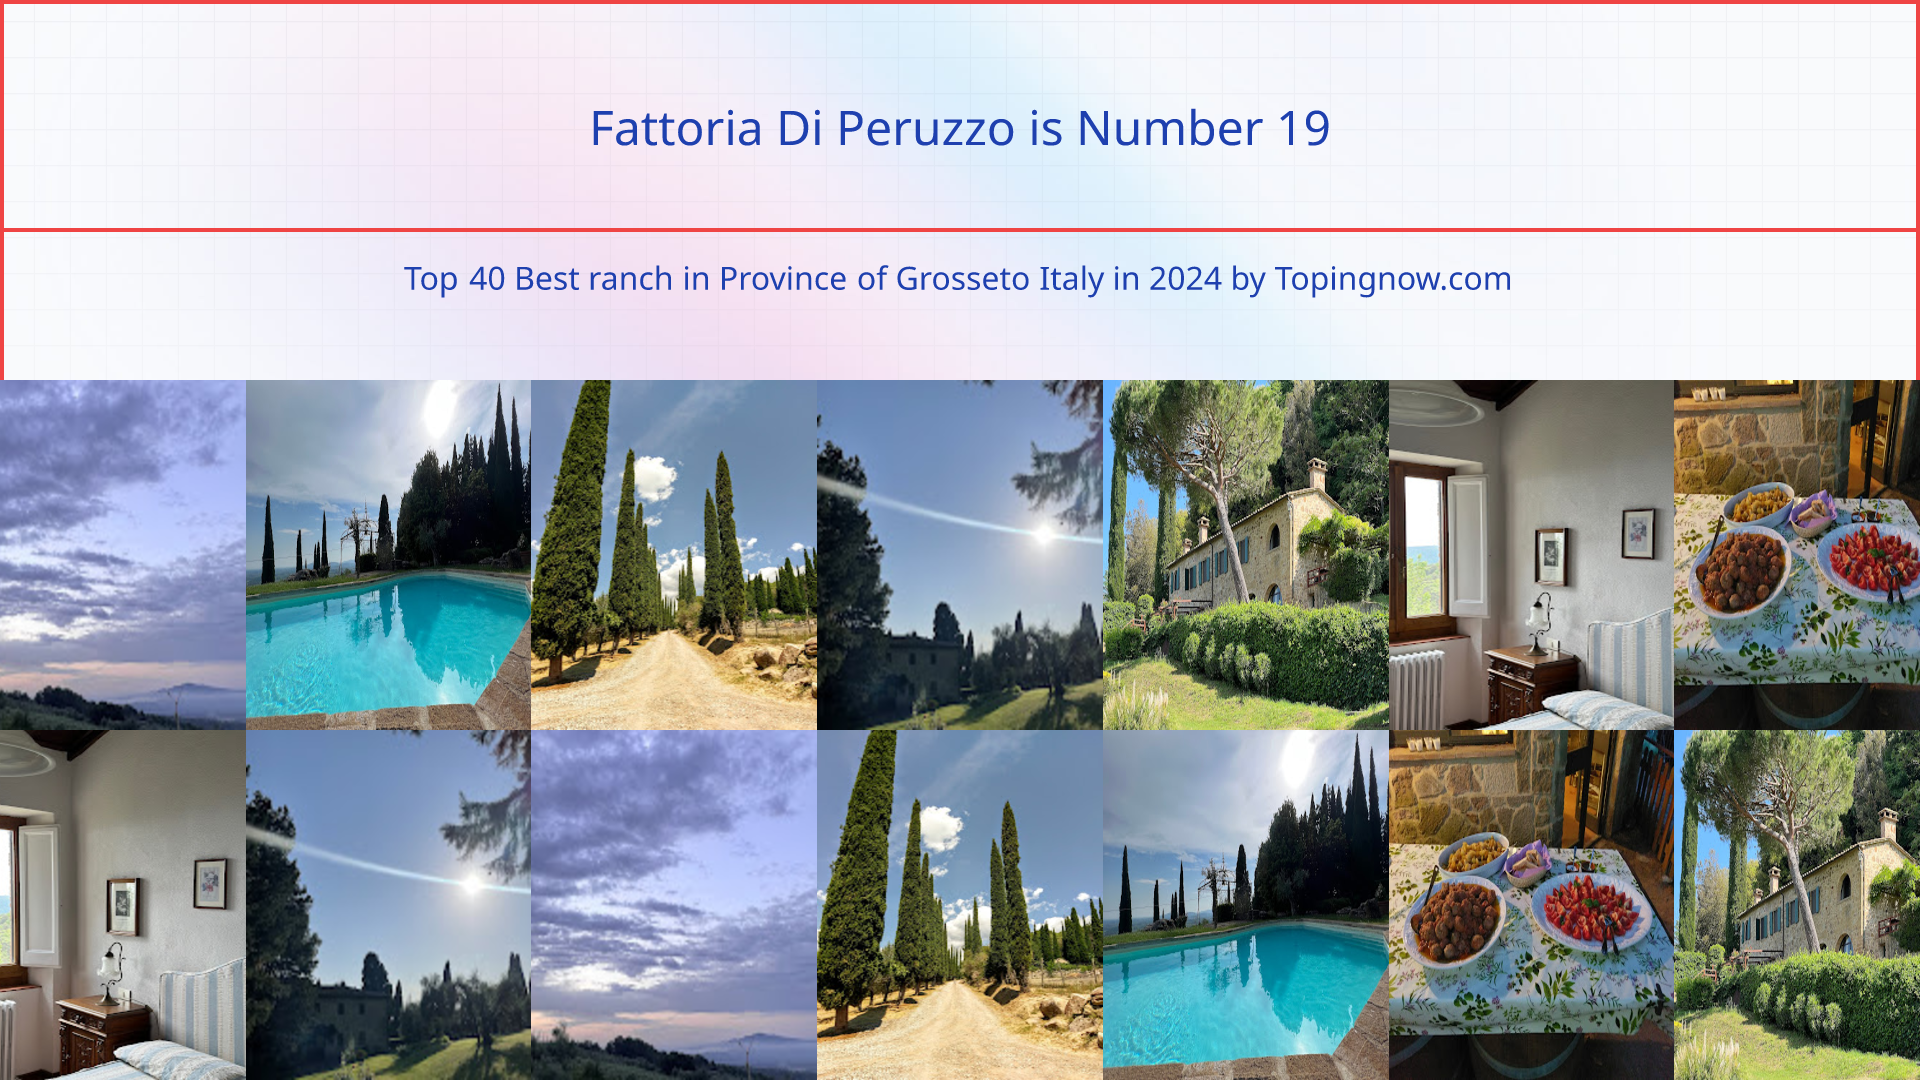 Fattoria Di Peruzzo: Top 40 Best ranch in Province of Grosseto Italy in 2024